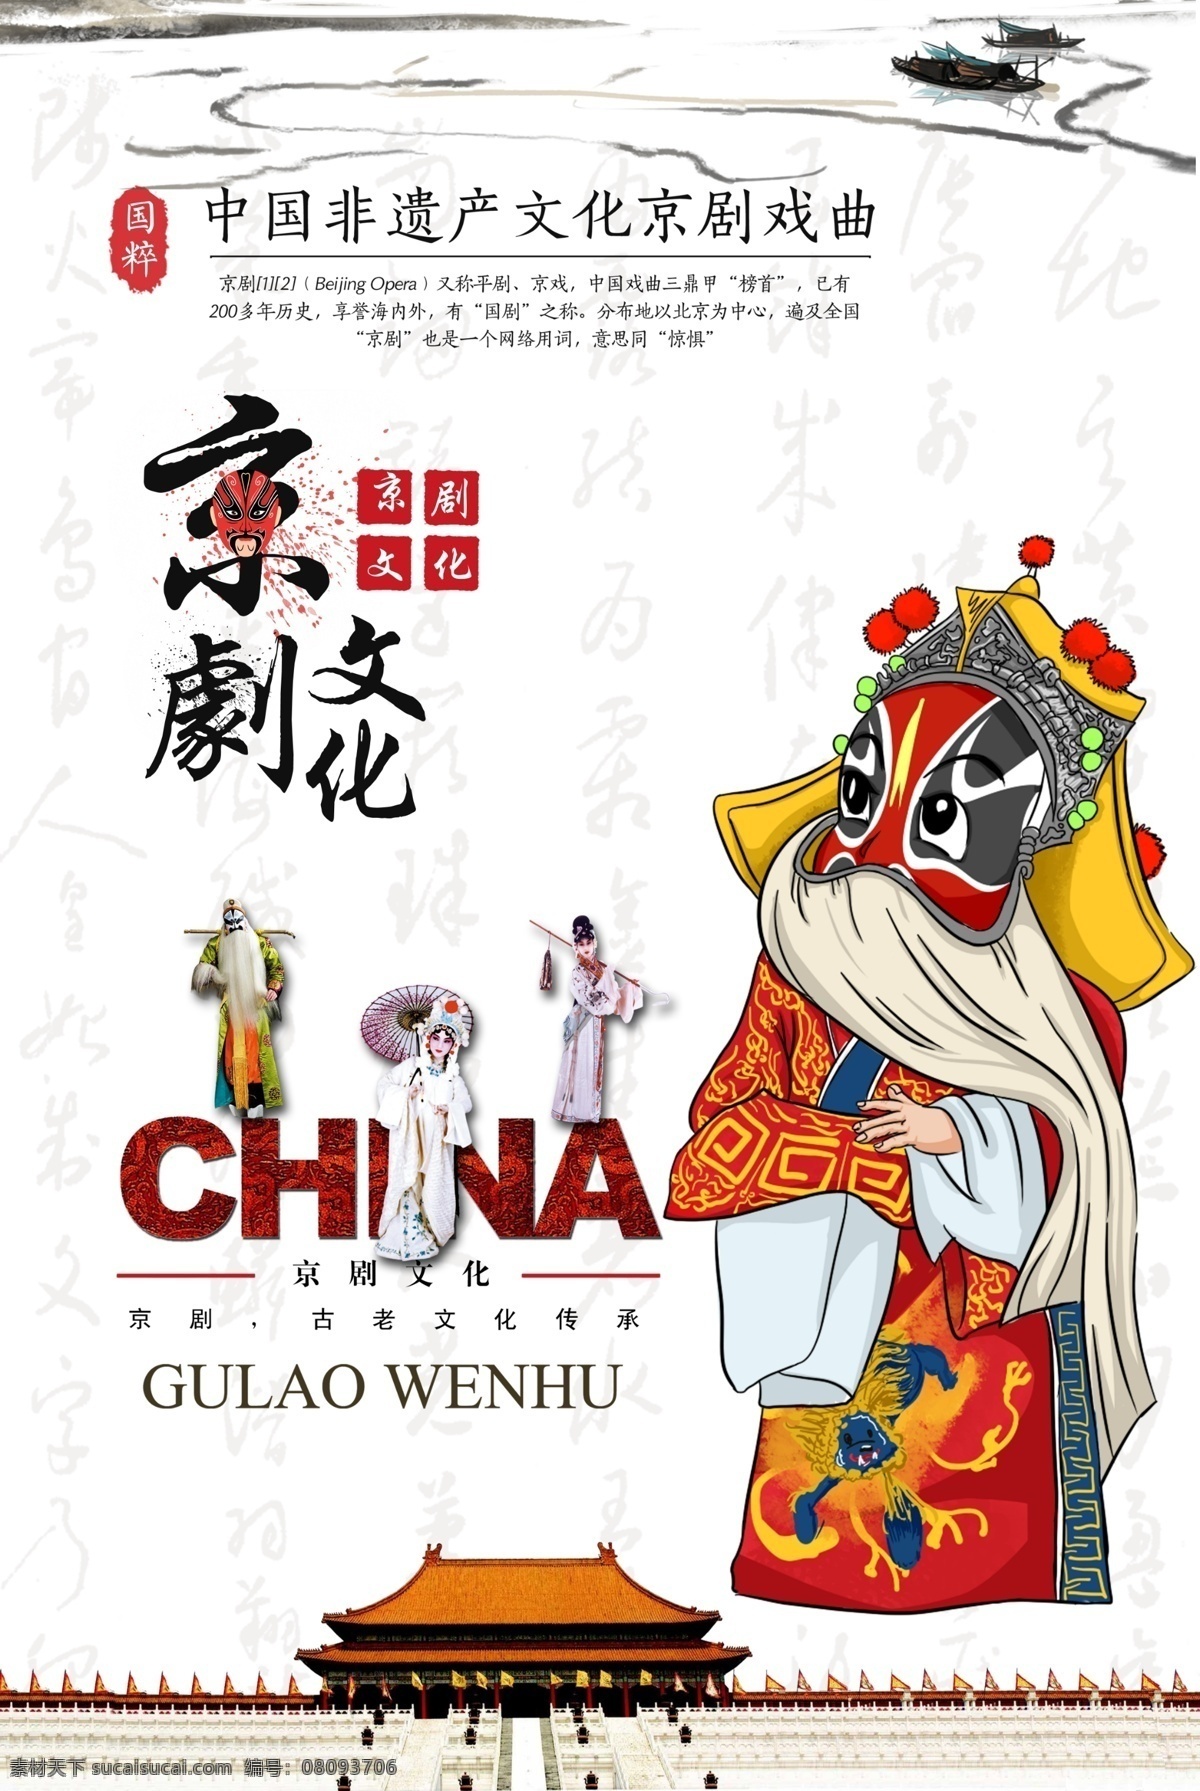 京剧 文化 戏曲文化 中国戏曲 传统文化 国粹 戏剧 非物质文化 华夏文化 戏曲 分层